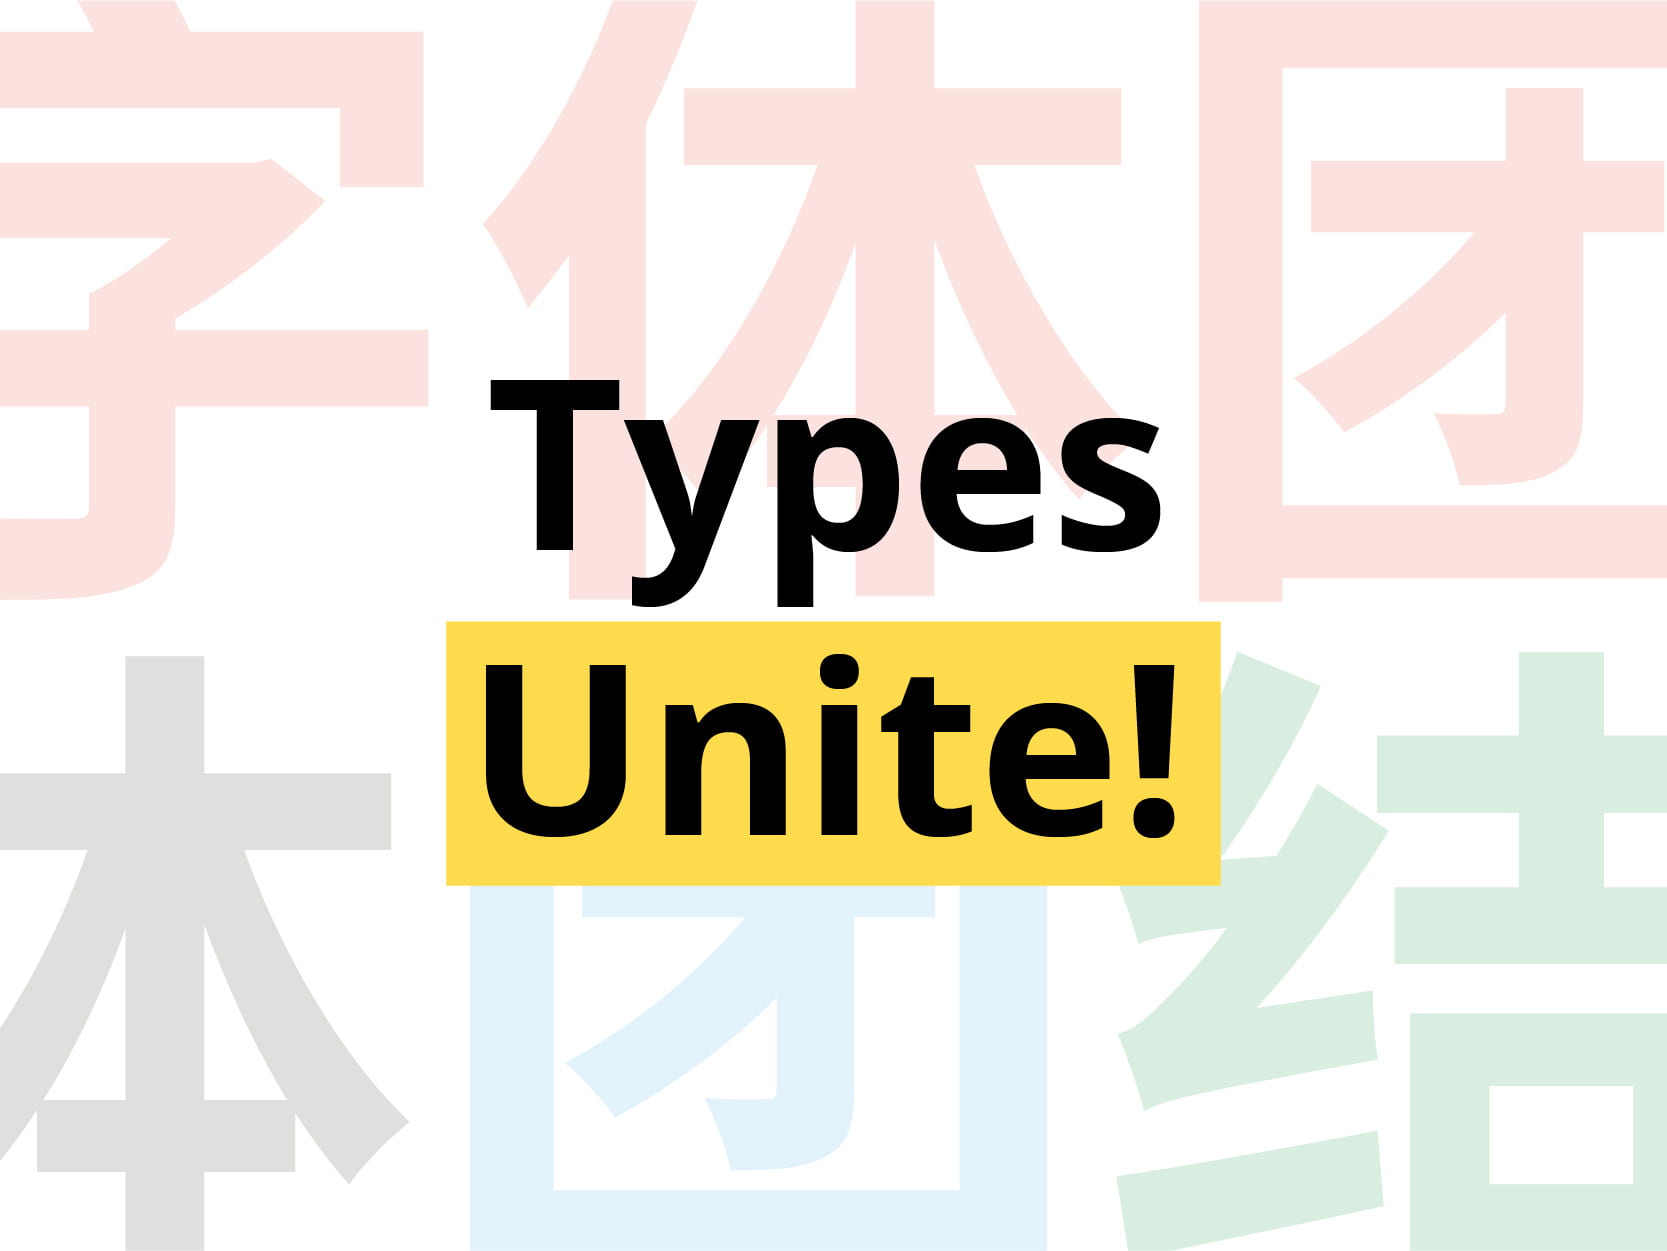 Types Unite at NTU ADM Portfolio